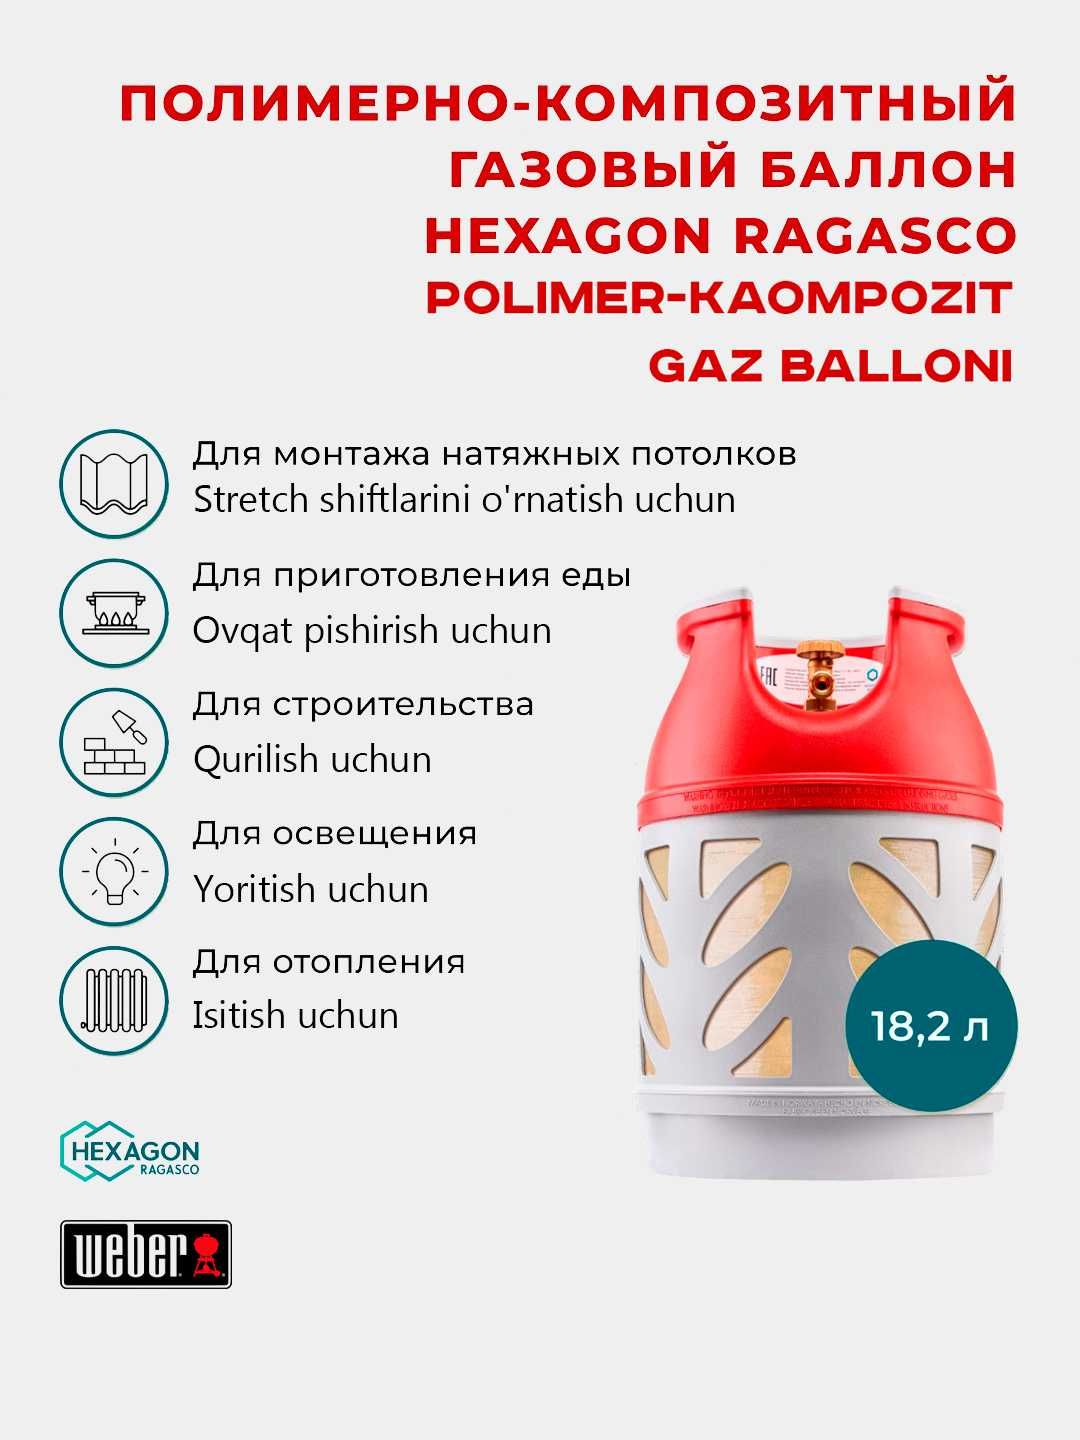 Легкие газовые баллоны из Норвегии 12л-33л гарантия 2года (gaz ballon)